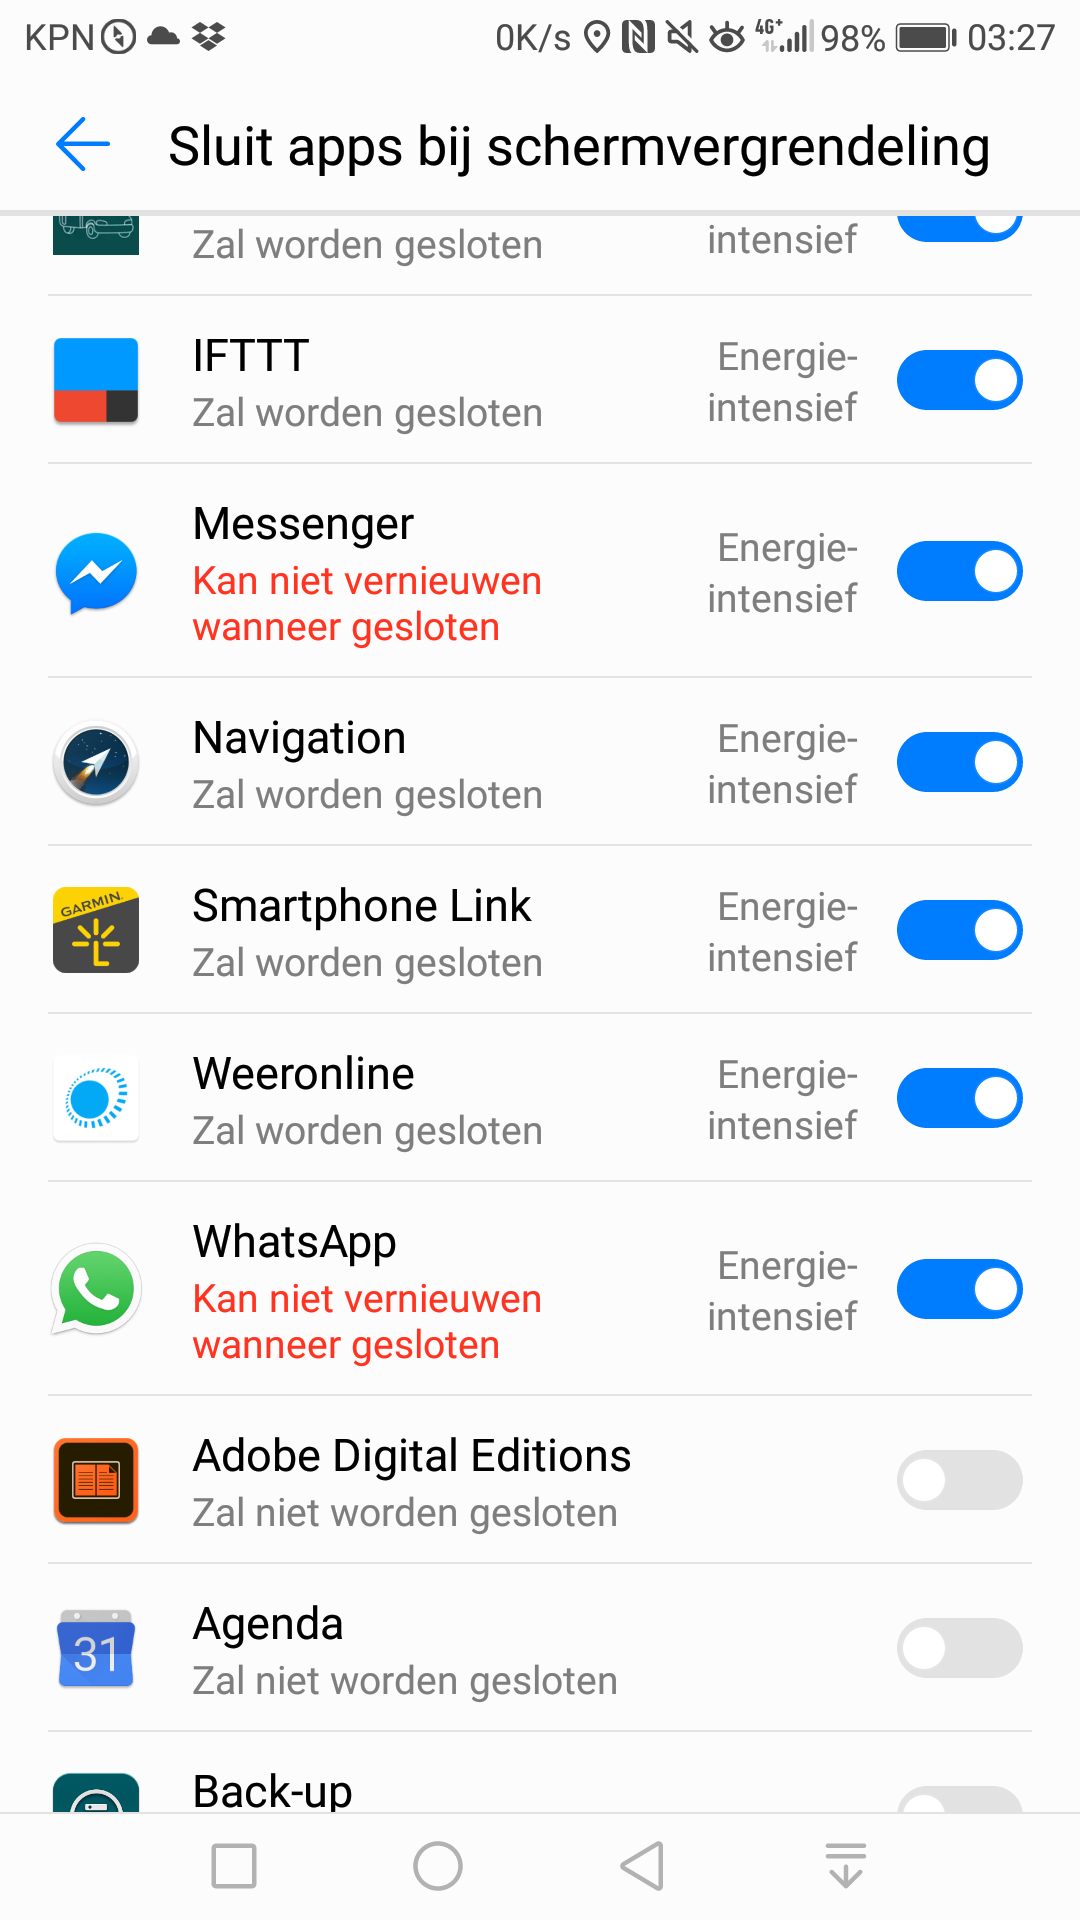 Whatsapp Berichten Komen Pas Binnen Bij Openen App (Android) | Kpn Community